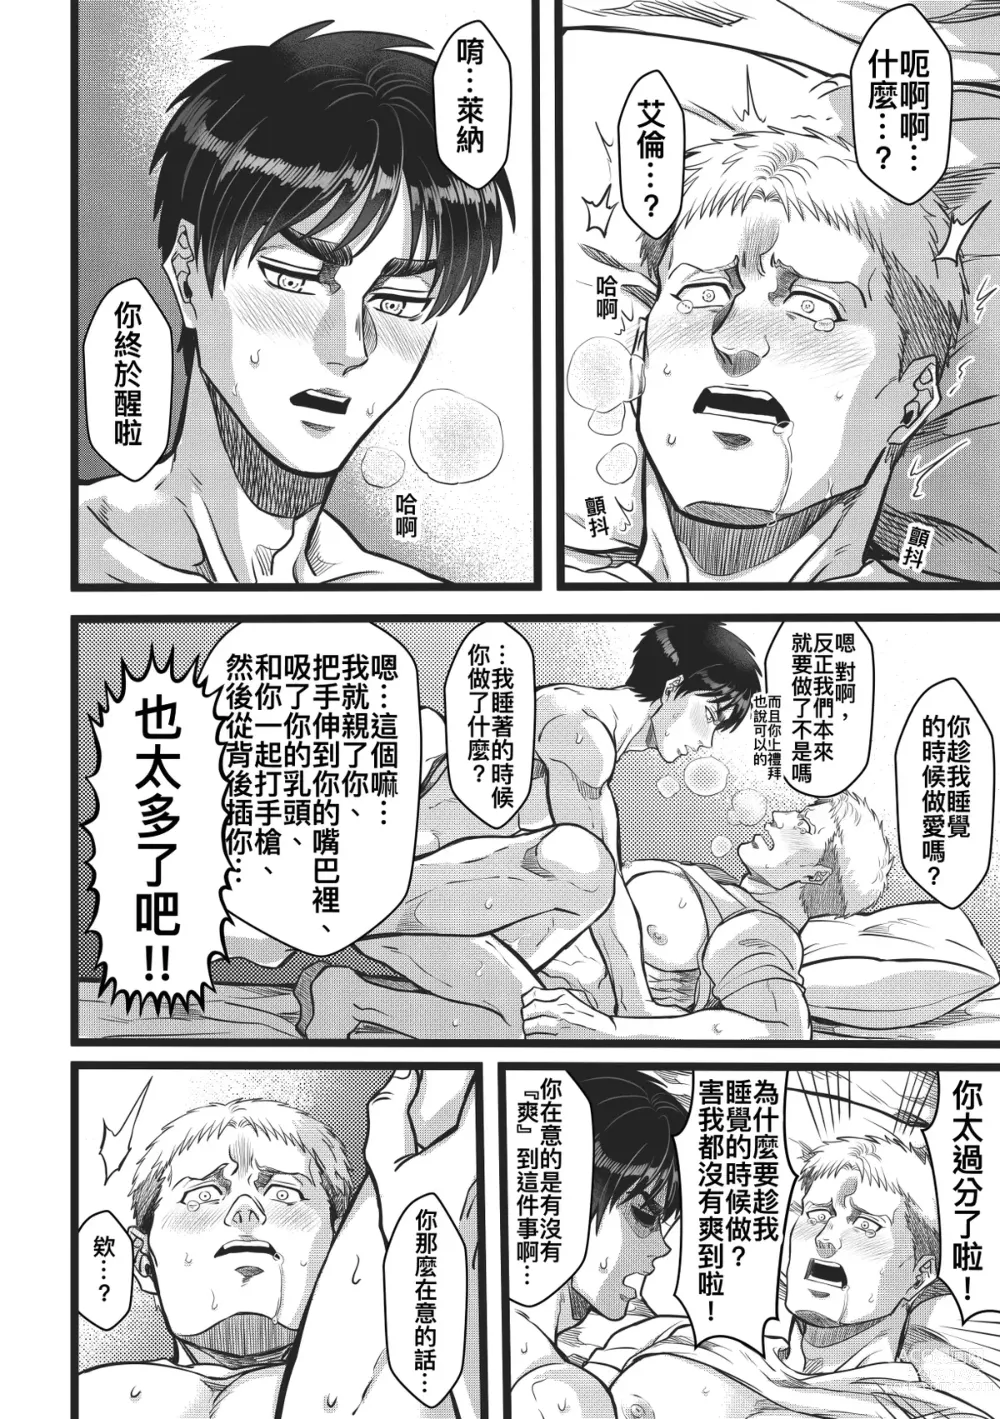 Page 44 of doujinshi Sleep Beauty